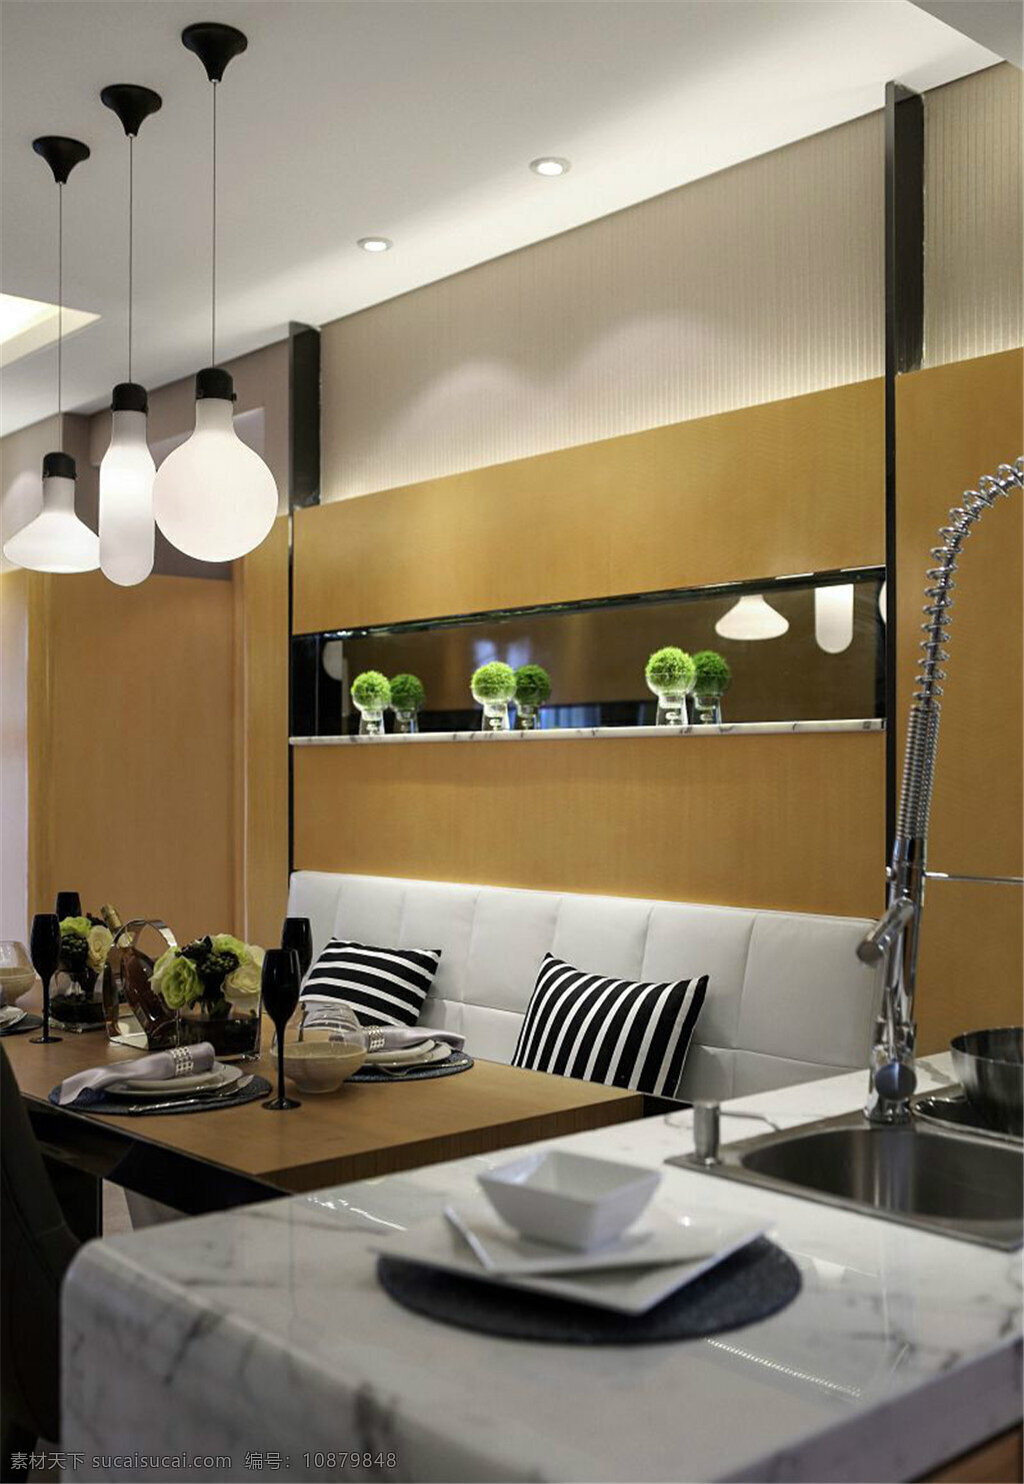 现代 时尚 客厅 白色 灯泡 吊灯 室内装修 效果图 褐色背景墙 客厅装修 大理石洗手台 方形餐桌